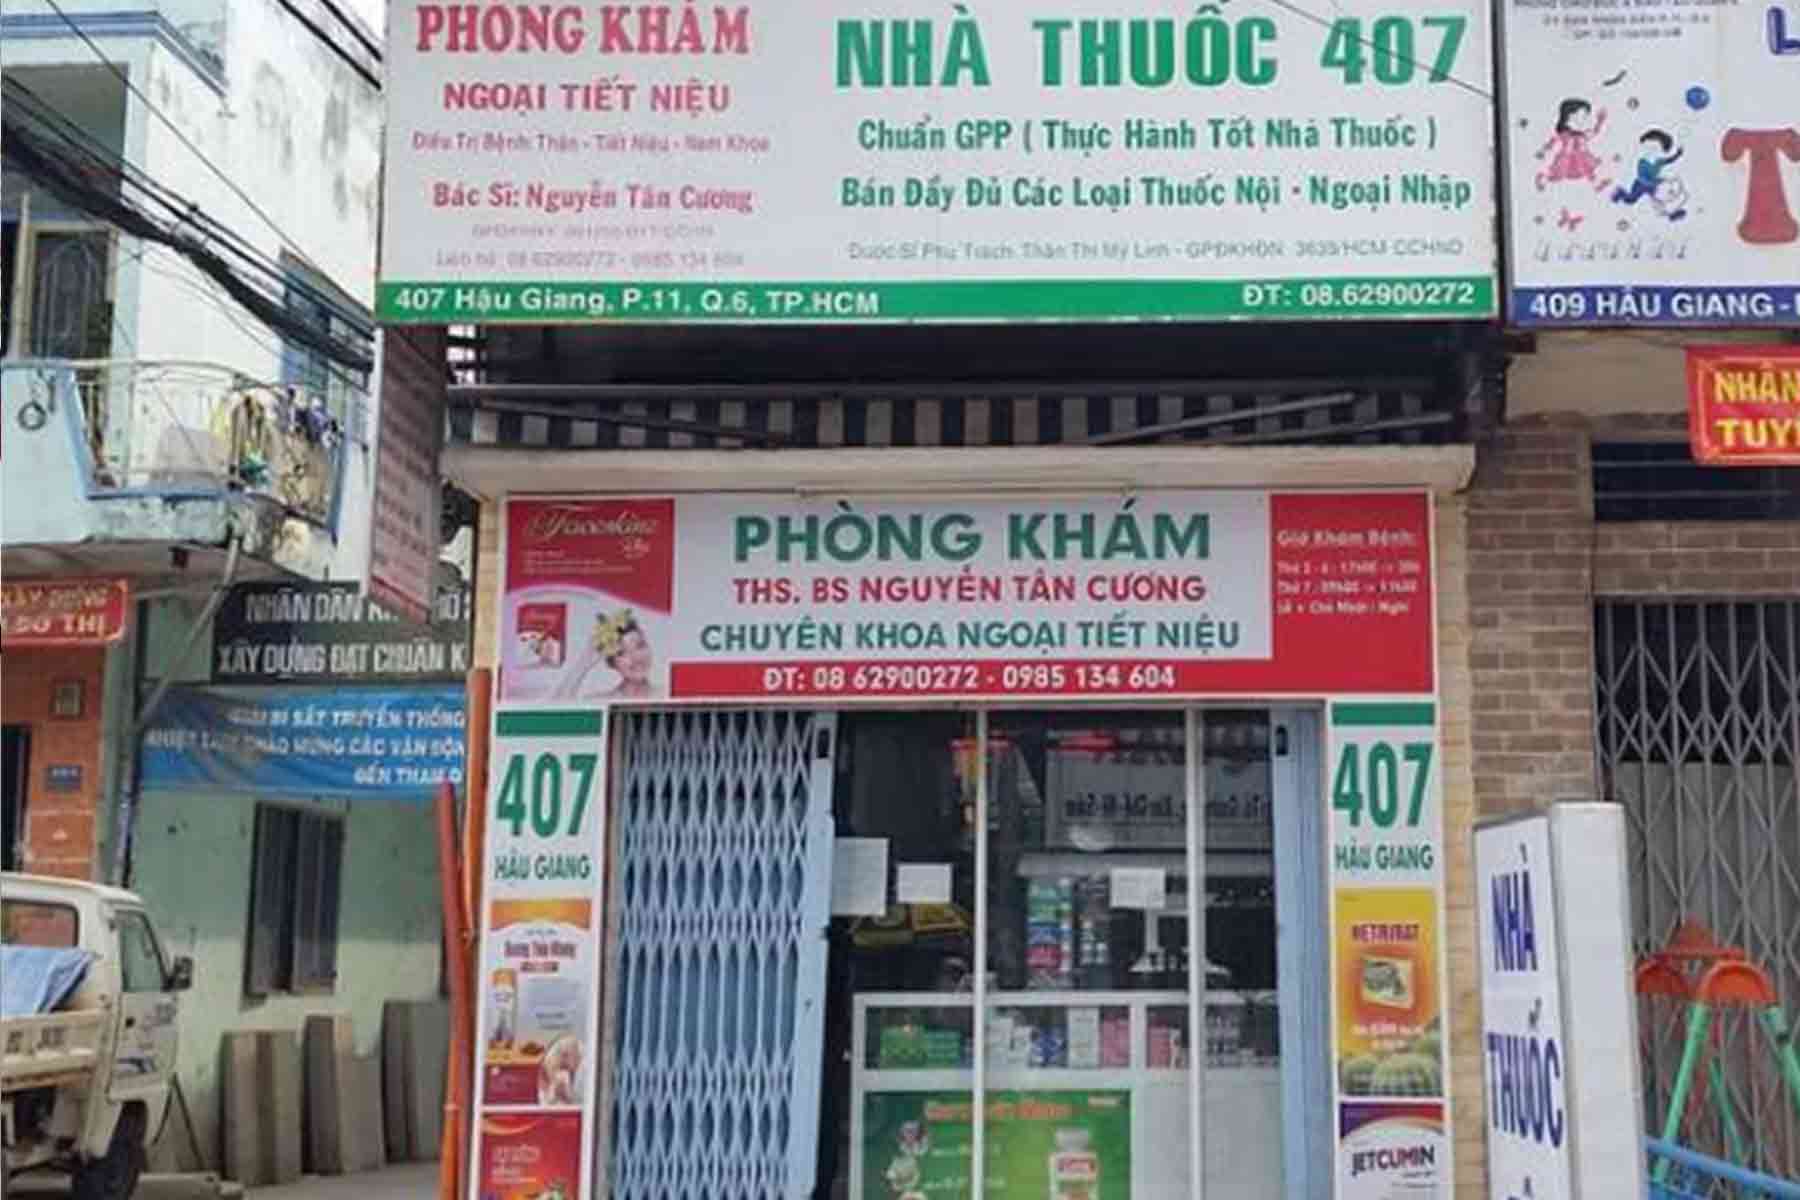 Phòng khám Ngoại Tiết niệu & Nam khoa - ThS.BS. Nguyễn Tân Cương